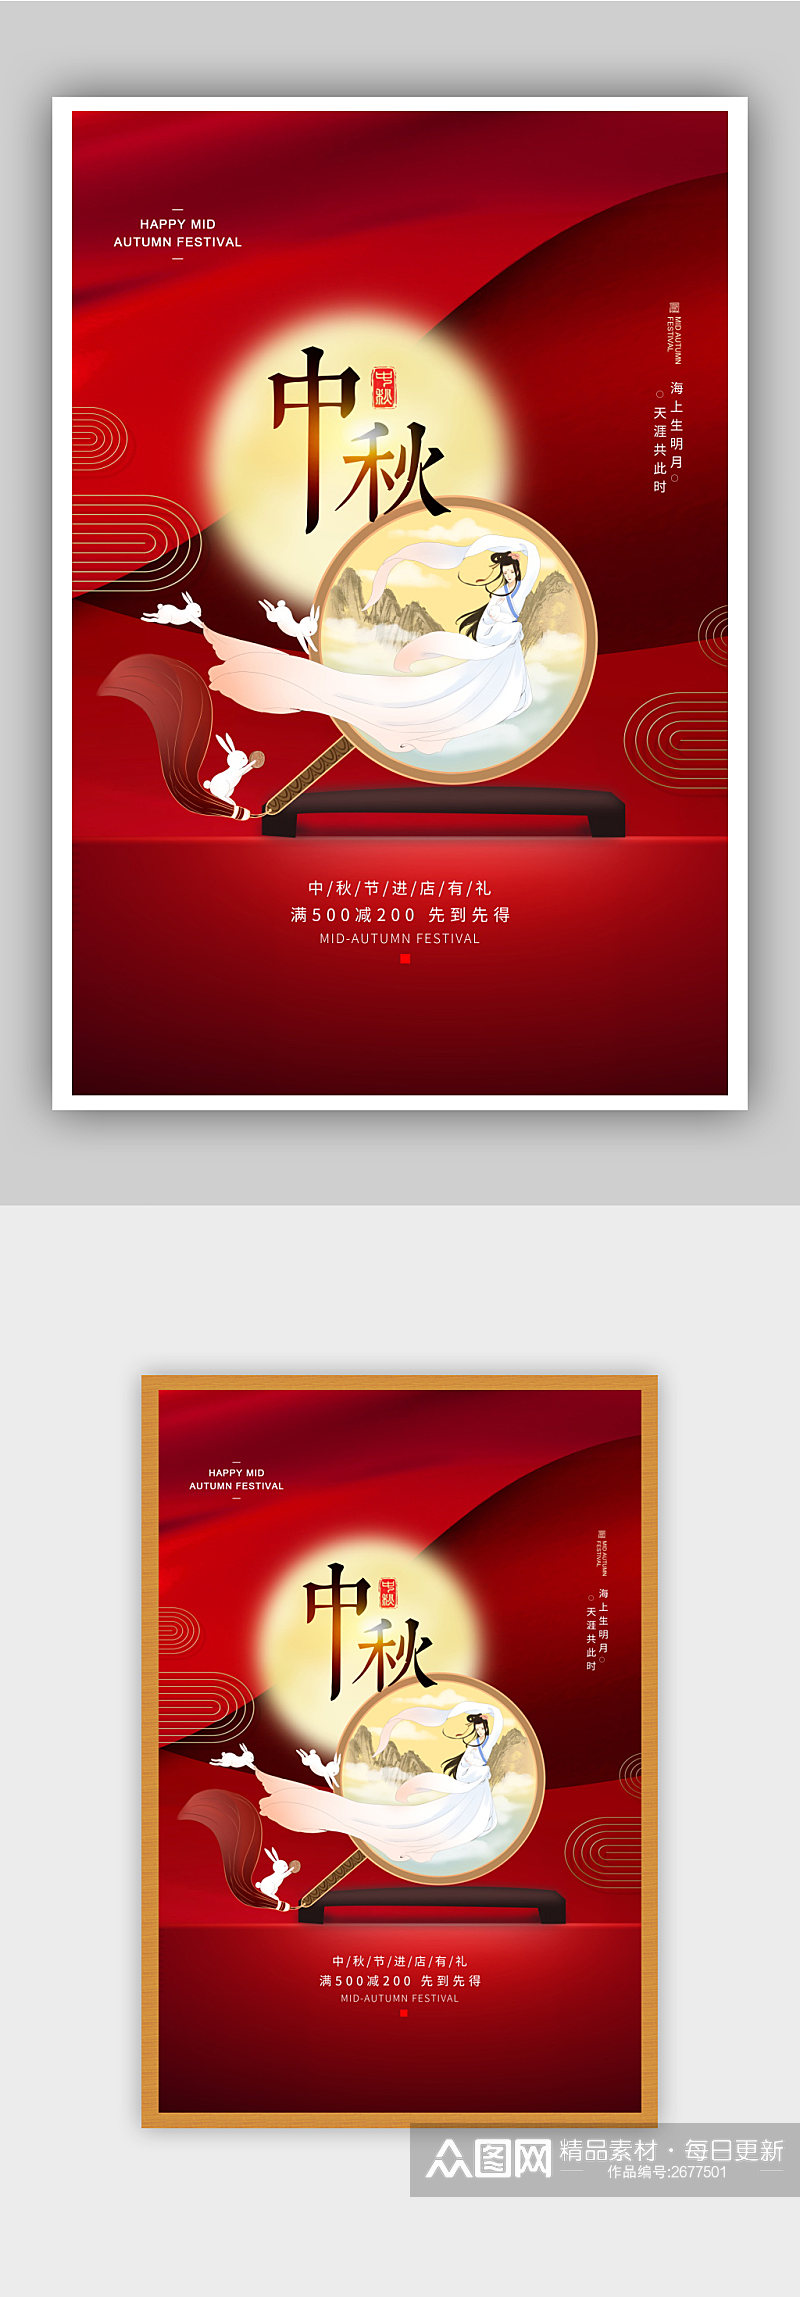 红色中秋节促销节日海报素材